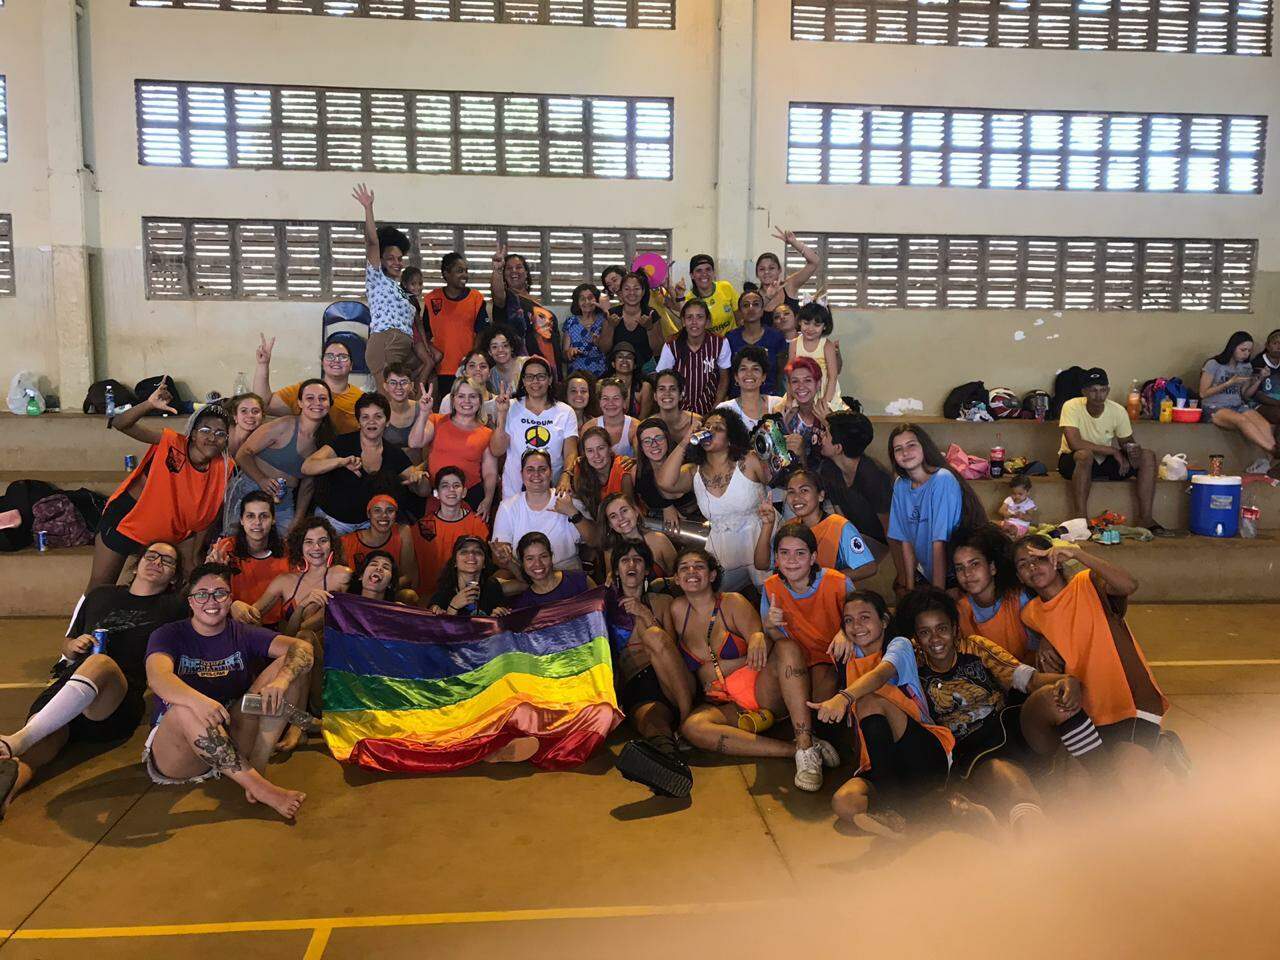 Time de futebol feminino pró-LGBTQ+ celebra representatividade e solidariedade em ação inspiradora